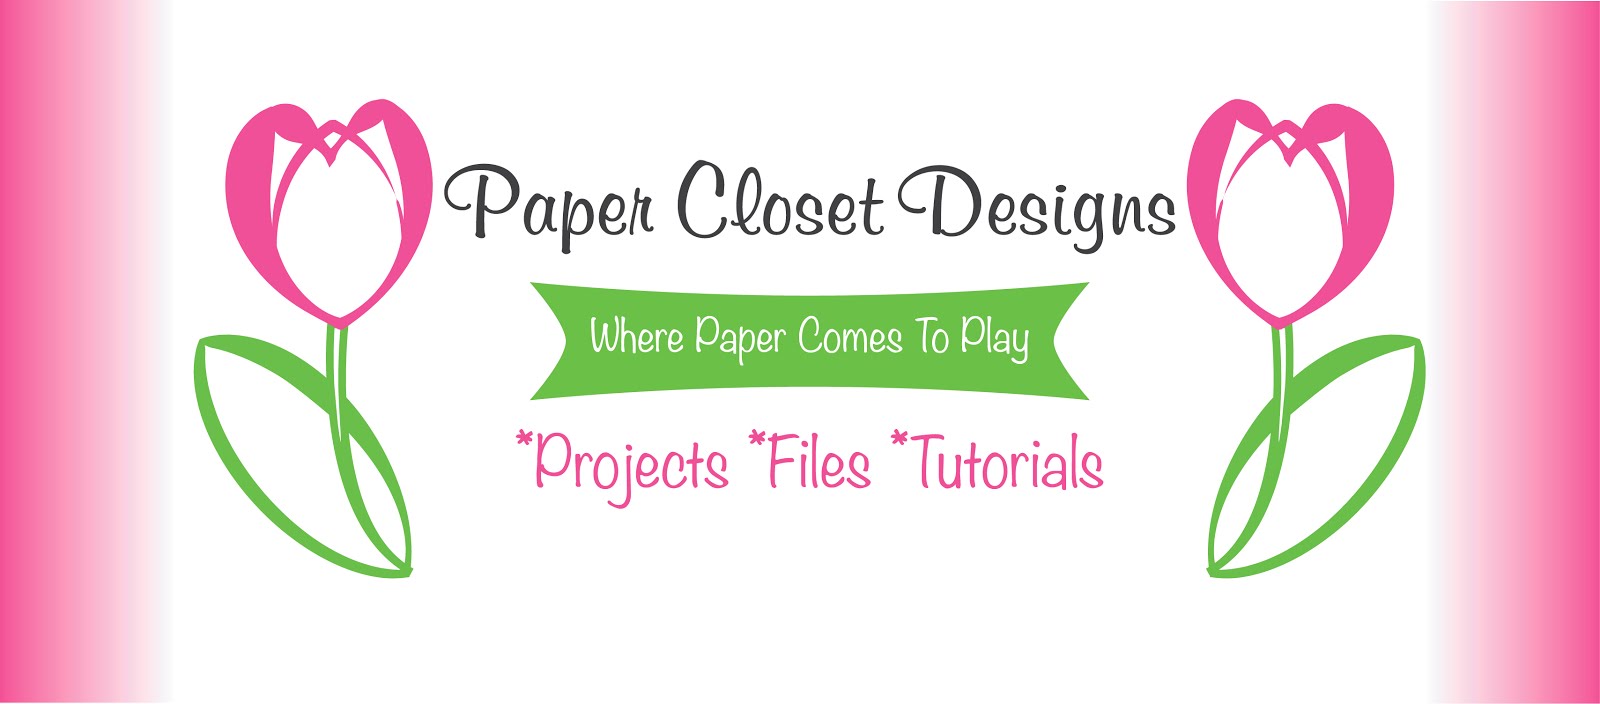 Paper Closet Designs